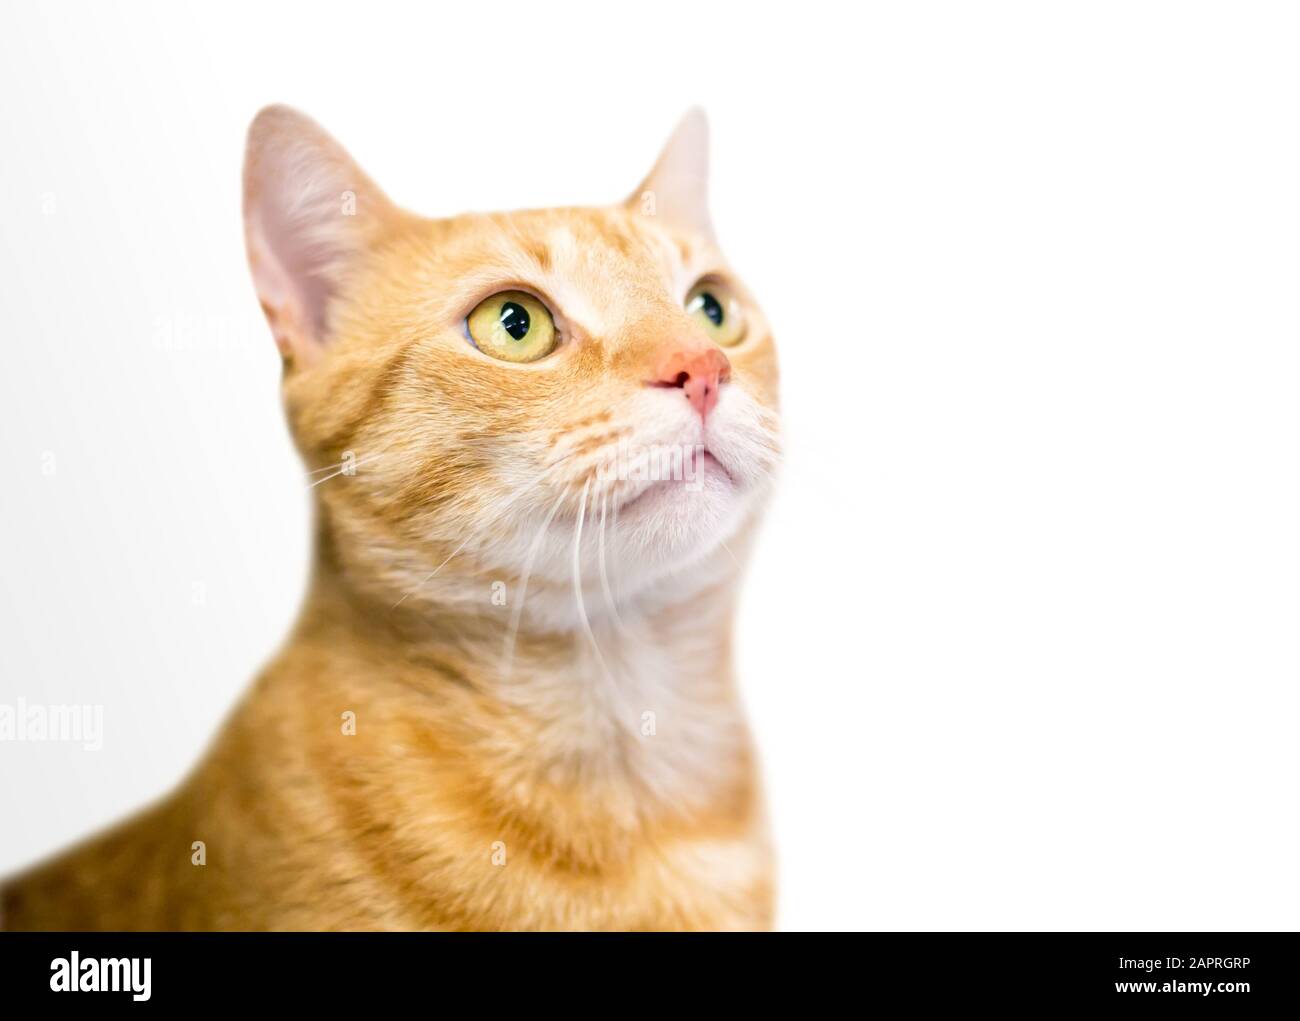 Un chat de shorthair domestique tabby orange avec yeux jaunes regardant vers le haut Banque D'Images